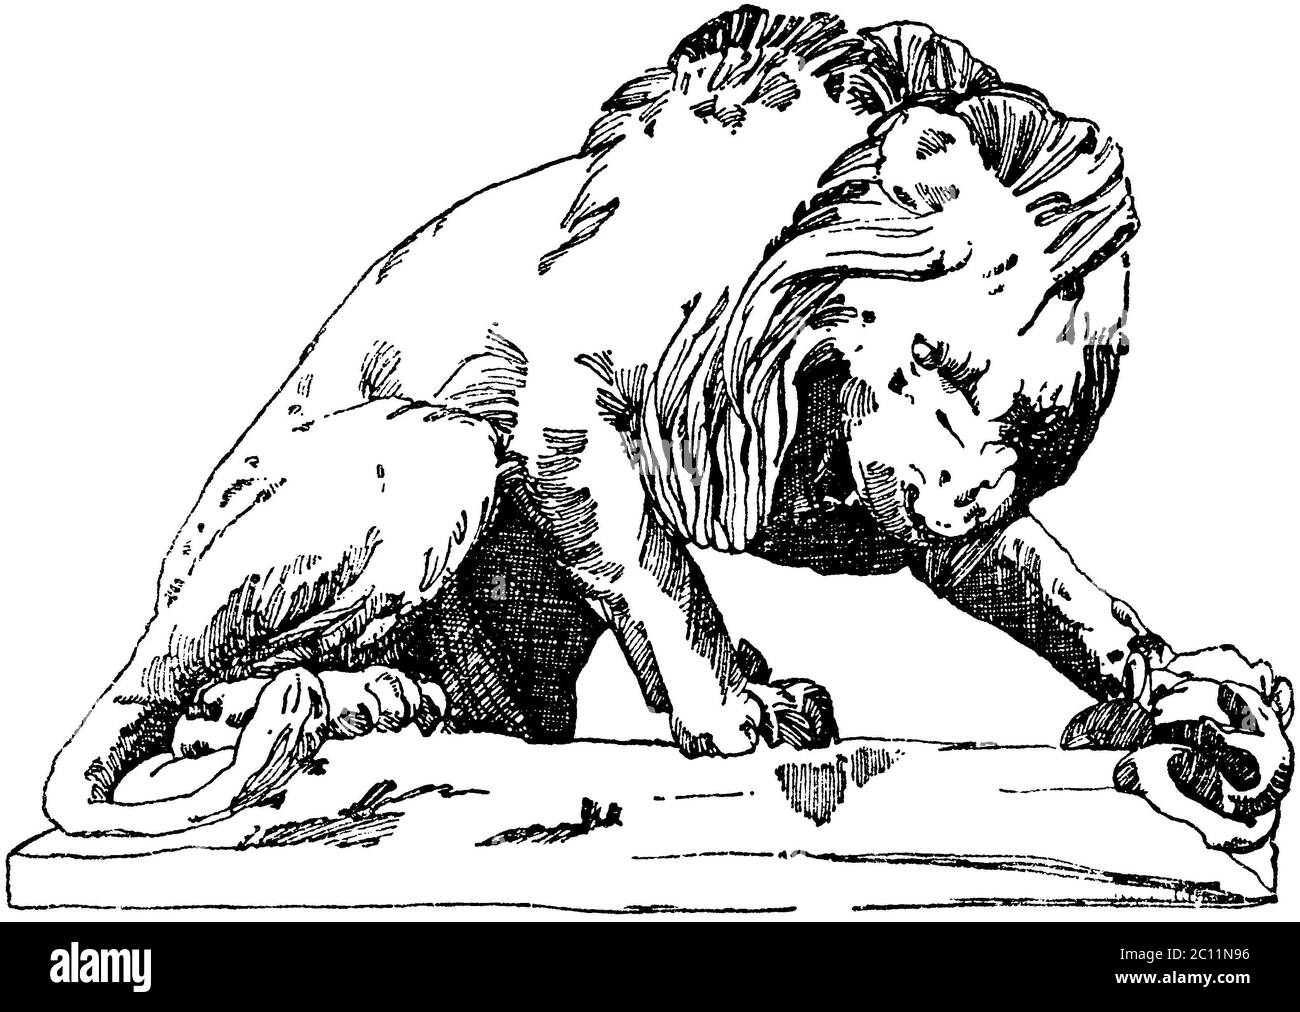 lion / Pannera leo / Löwe aus den Tuilerien (terrasse du bord-de-l'eau) à Paris. 19. Jahrhundert. (Baldus, Raguenet) / livre de motifs, ) Banque D'Images